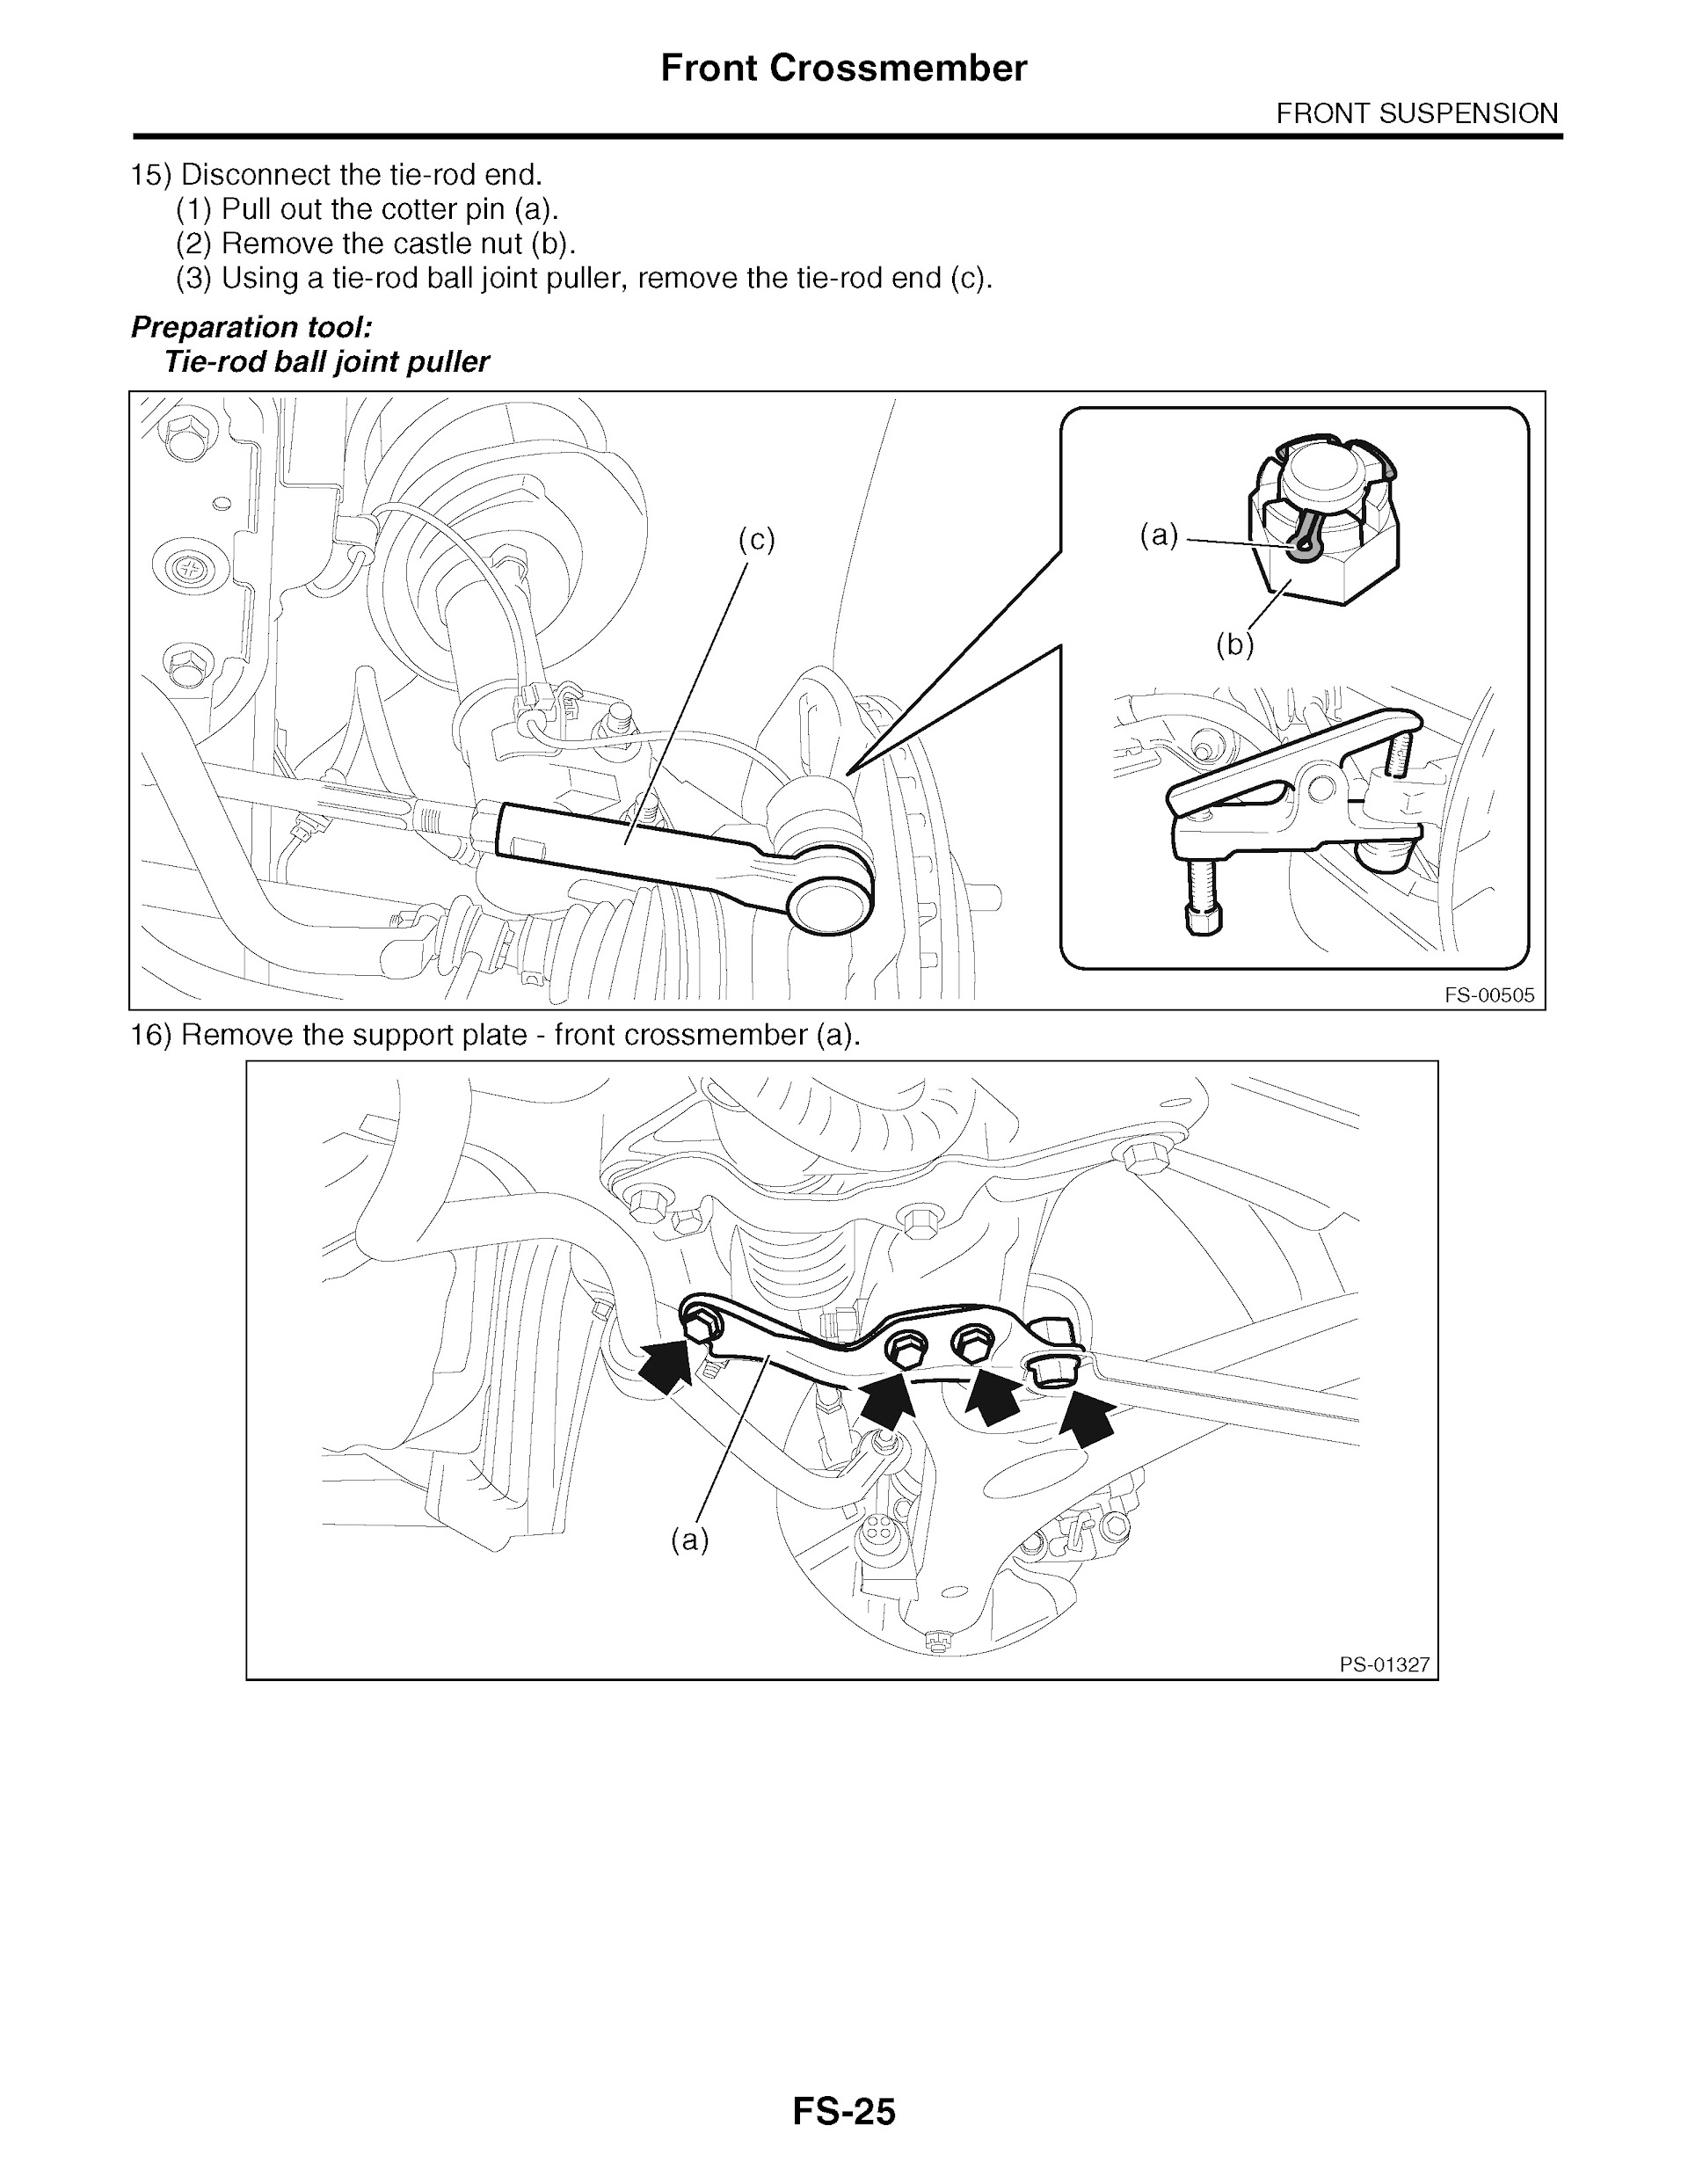 2013 Subaru Impreza & XV Crosstrek Repair Manual, Front Suspension Removal